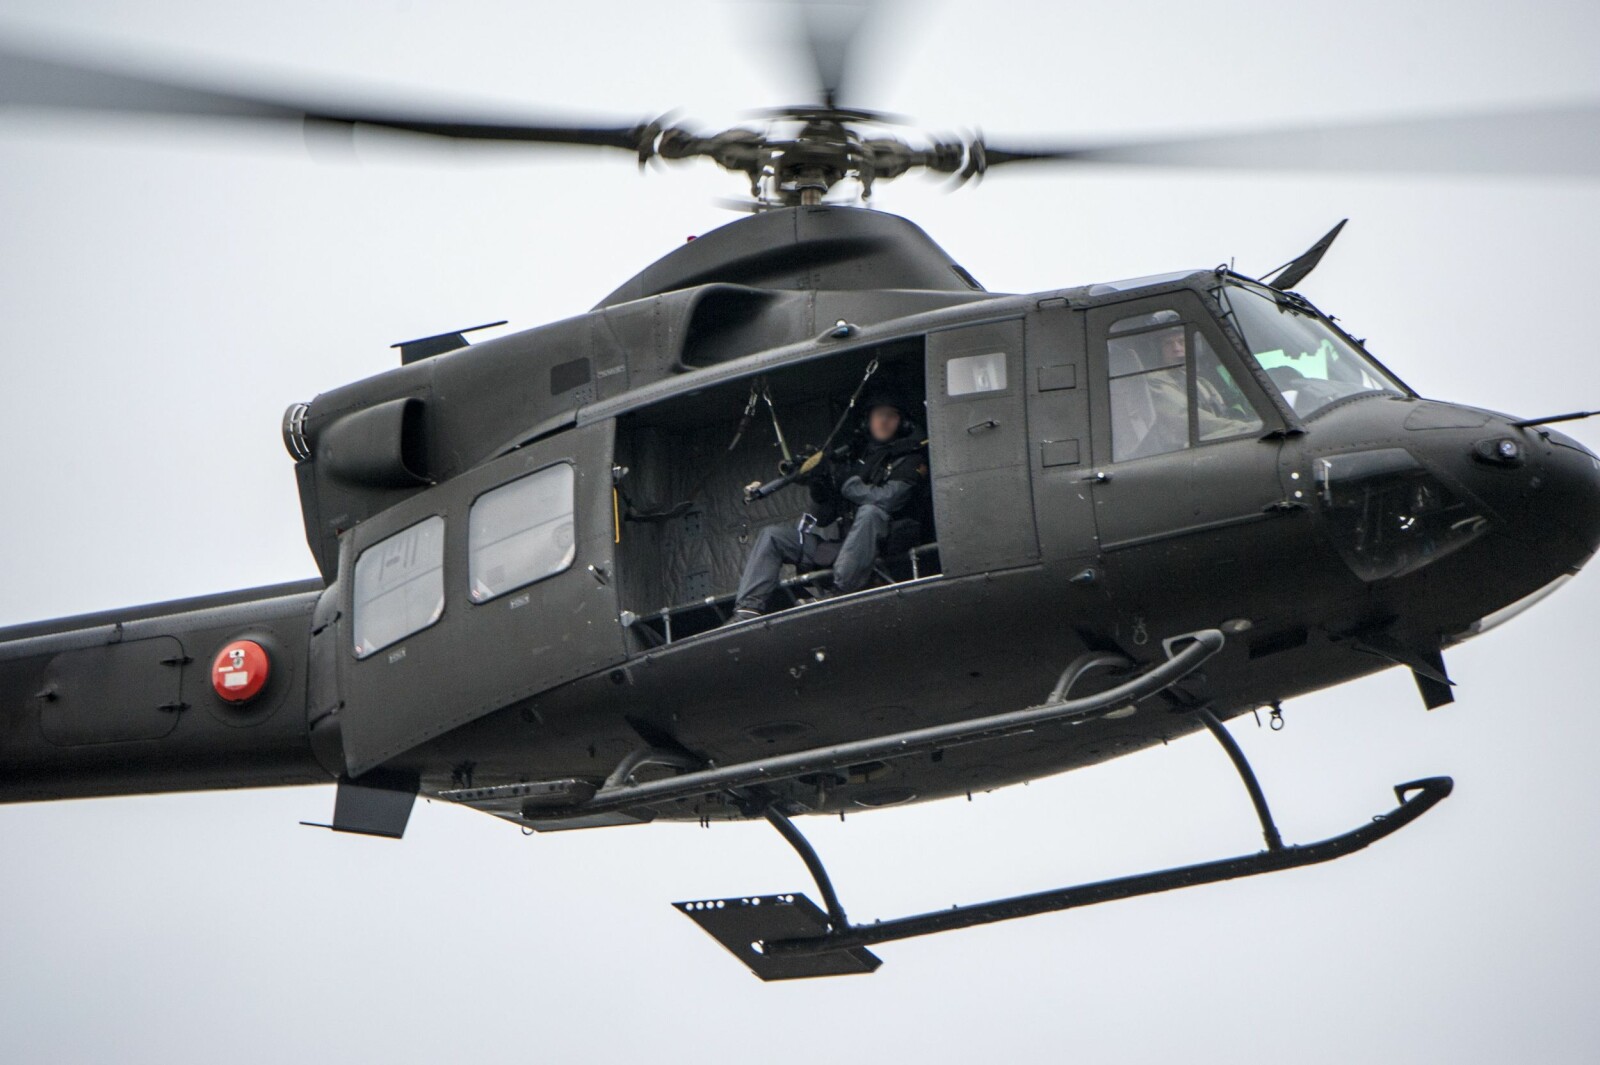 <b>VÅPENPLATTFORM:</b> Hittil har Politiet hovedsakelig brukt Forsvarets Bell 412-helikoptre som våpenplattform. Her er en skarpskytter fra Beredskapstroppen i aksjon under en øvelse.